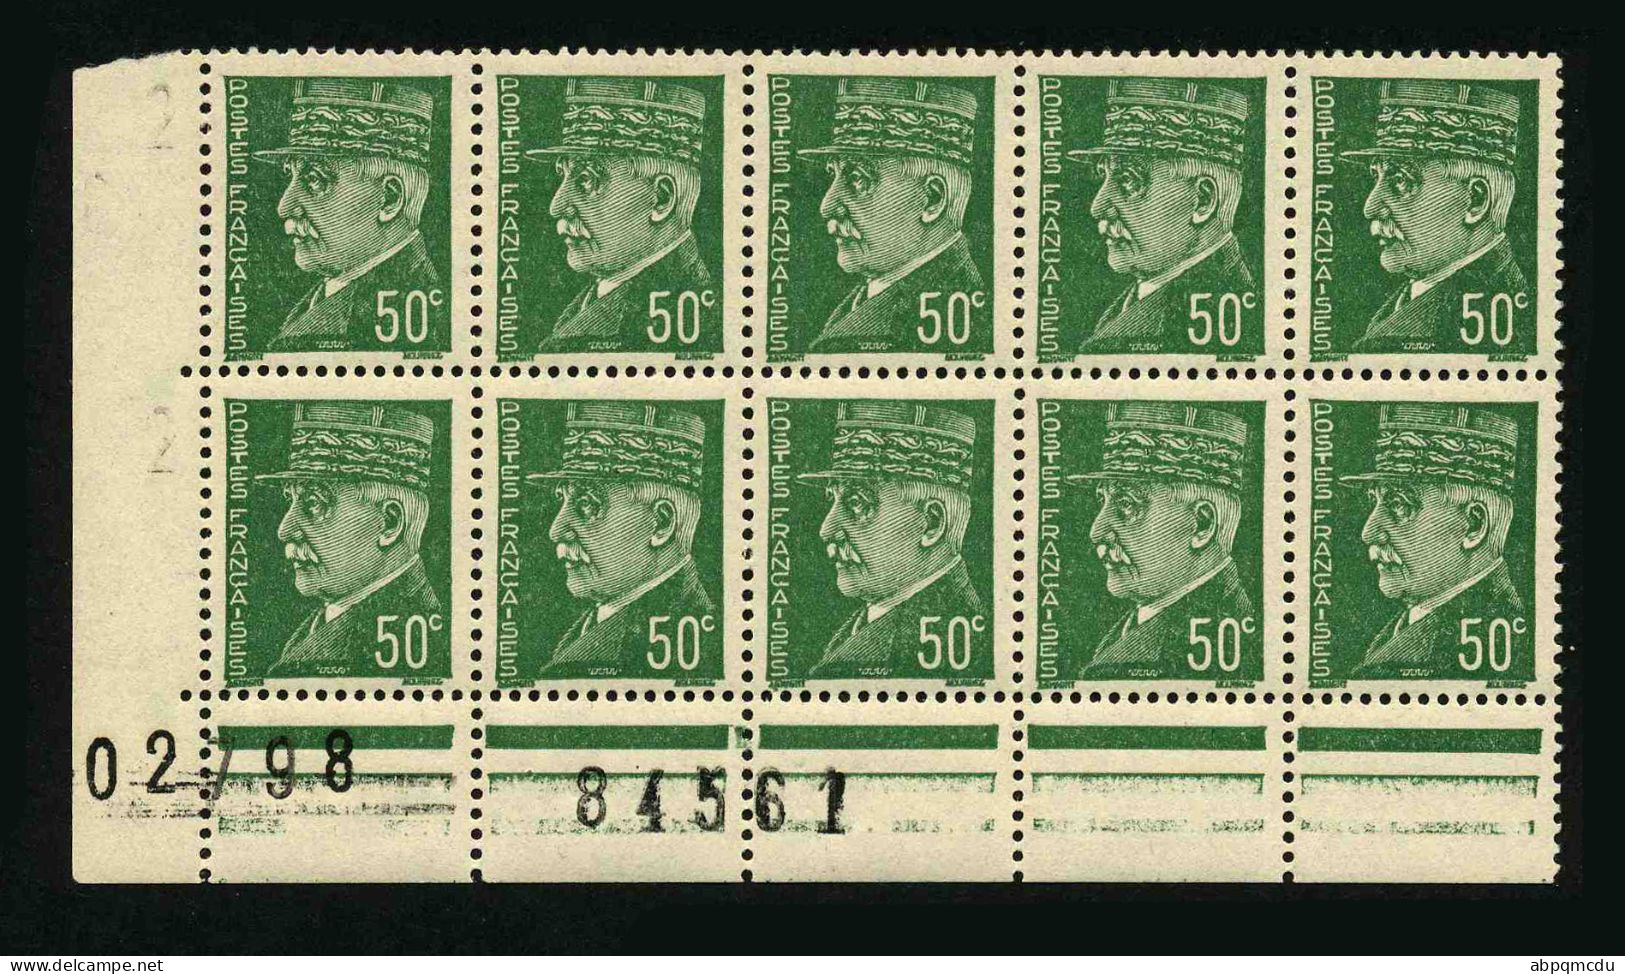 FRANCE - YT 508 - BLOC DE 10 TIMBRES PROVENANT D'UNE FEUILLE DE REMPLACEMENT - Unused Stamps